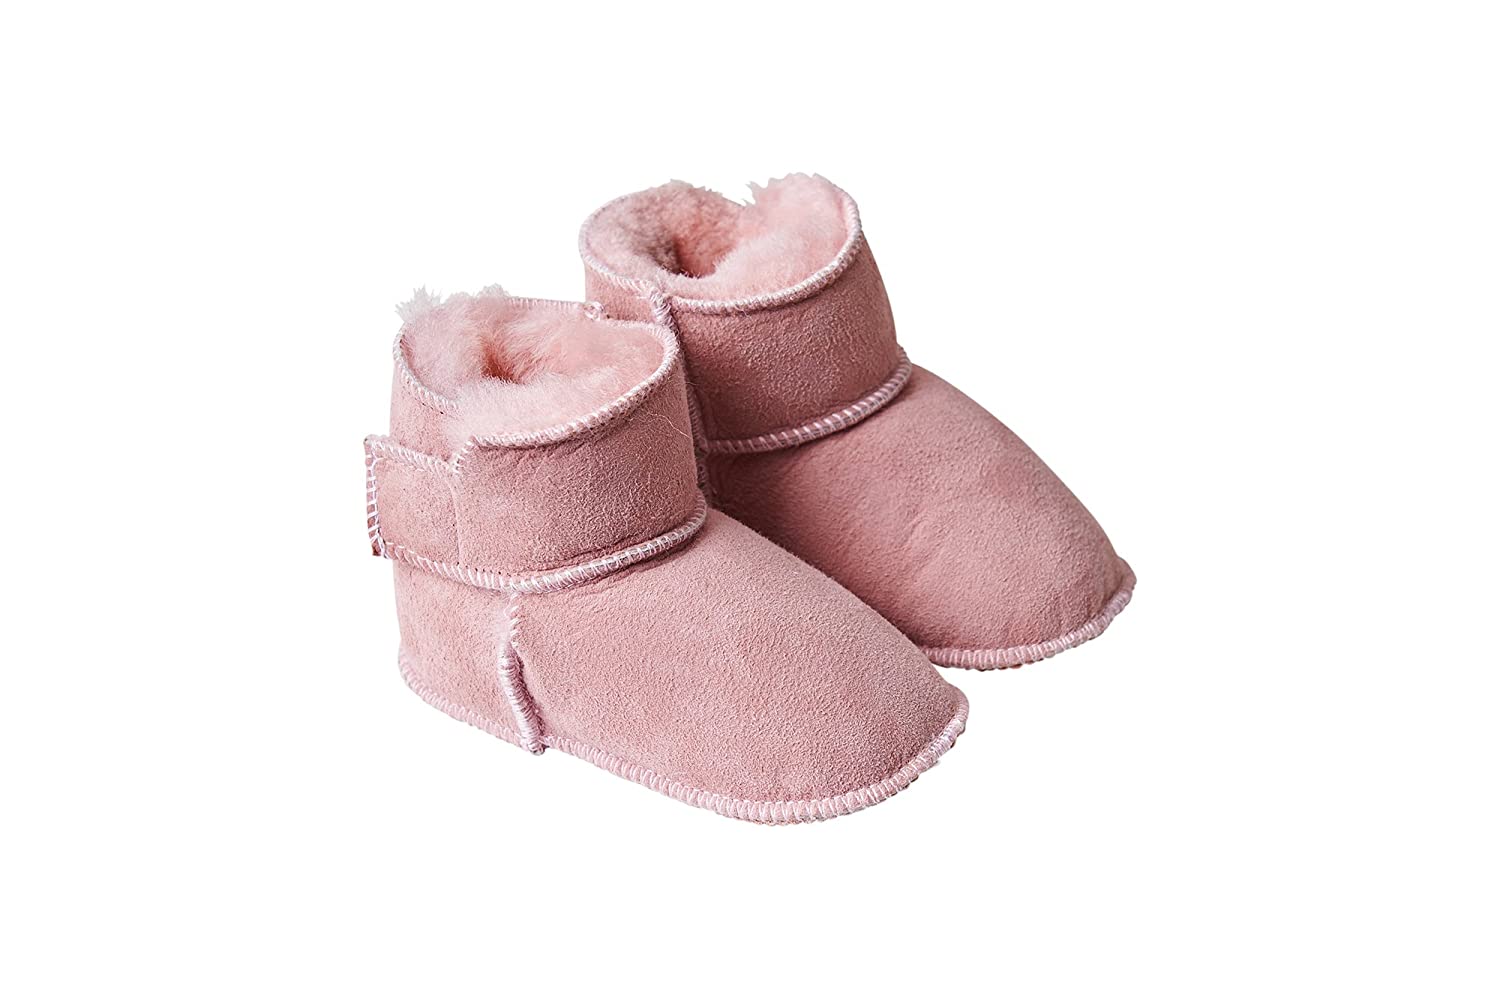 Fellhof 5101 Cuddly Baby Boots, Size 1 (16/17) 16/17